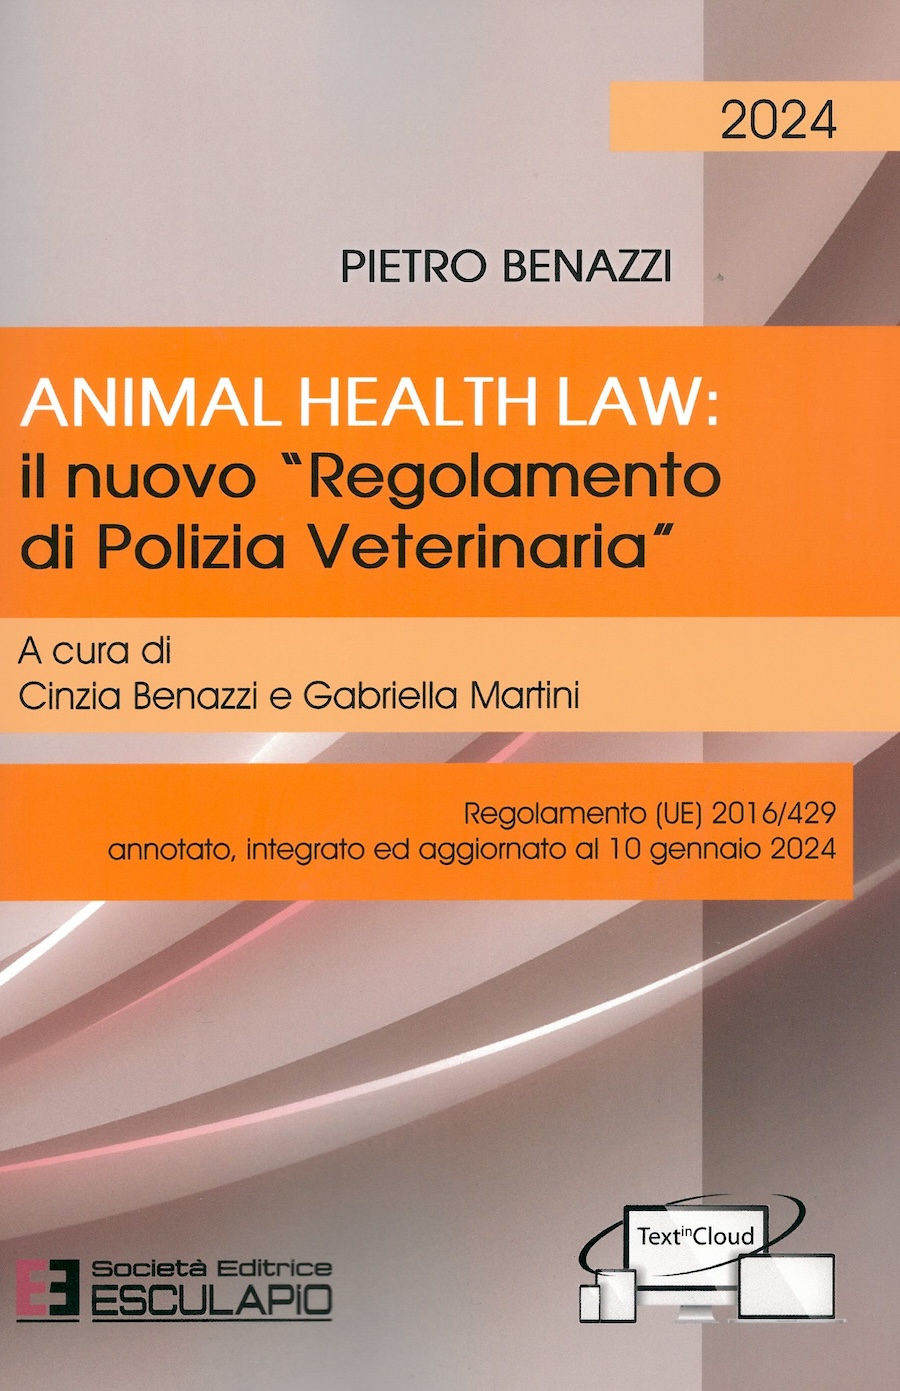 Animal Healt Law: il nuovo "Regolamento di polizia veterinaria" a cura do Cinzia Benazzi e Gabriella Martini - Regolamento (UE) 2016/429 annotato, integrato ed aggiornato al 10 gennaio 2024